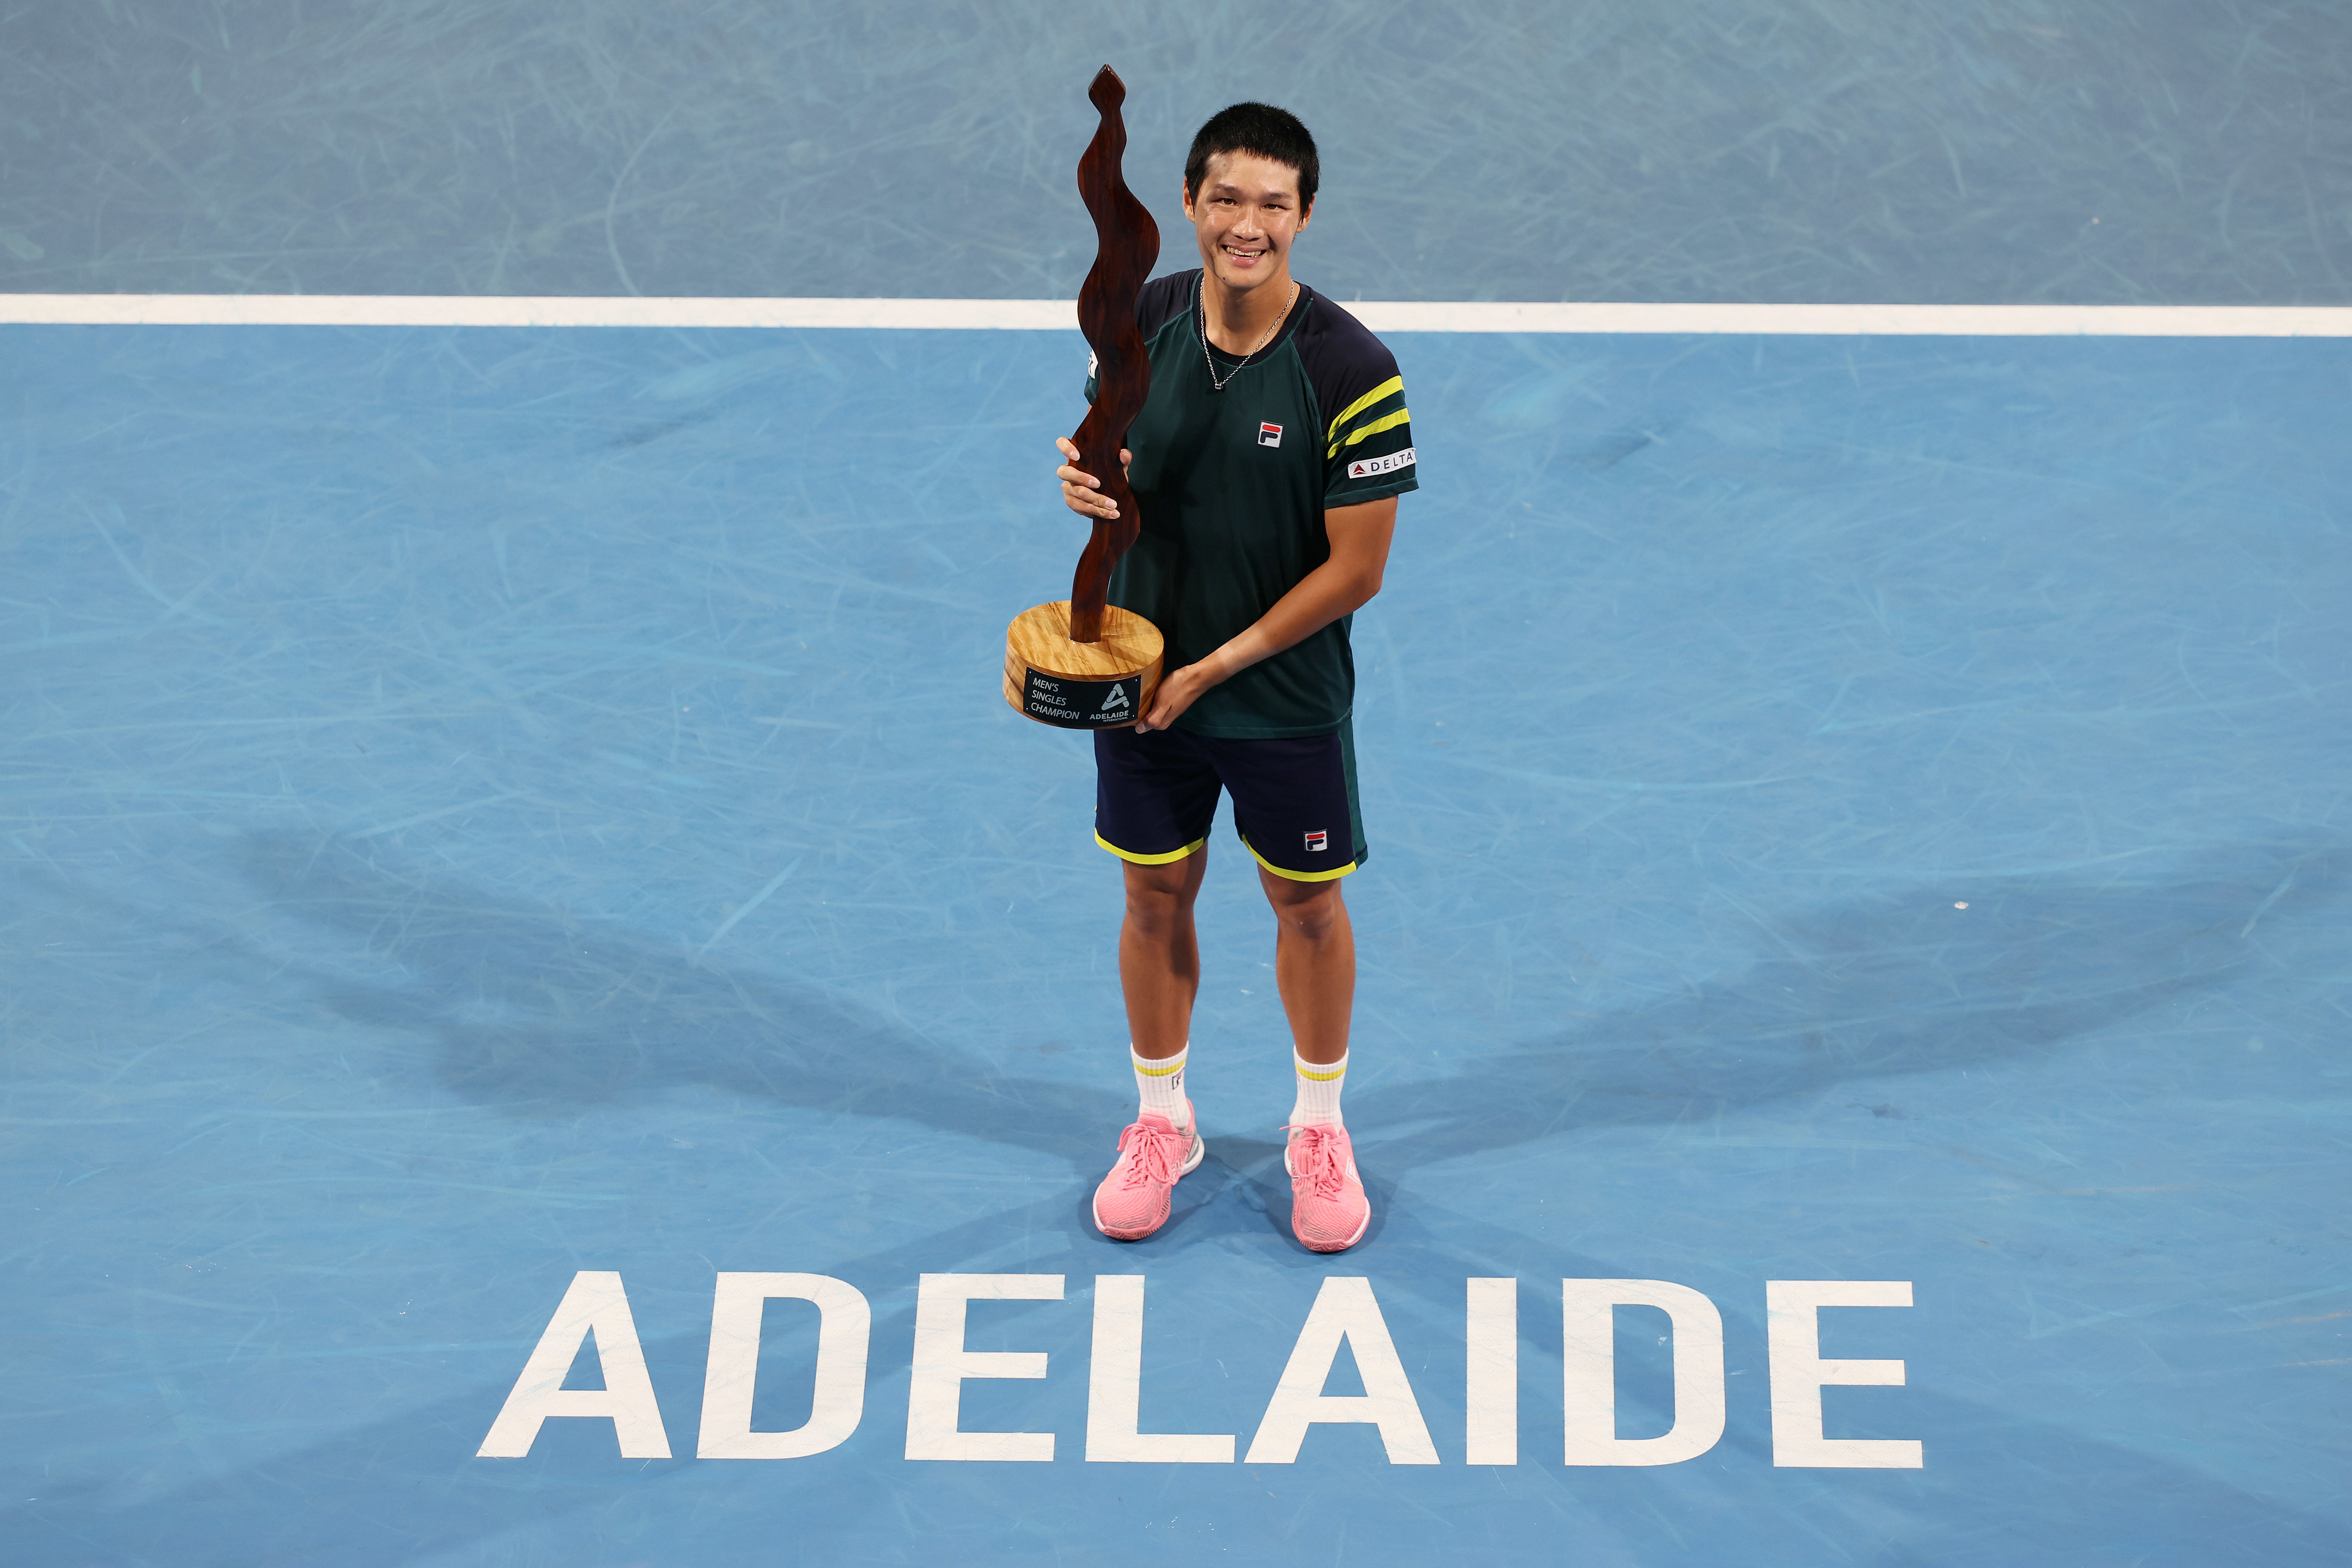 권순우가 14일 호주 애들레이드에서 끝난 남자프로테니스(ATP) 투어 애들레애드 인터내셔널 2차대회에서 우승, 한국 선수로는 처음으로 ATP 투어 2승째를 일궈낸 뒤 트로피를 들어보이고 있다.  [호주테니스협회 제공]